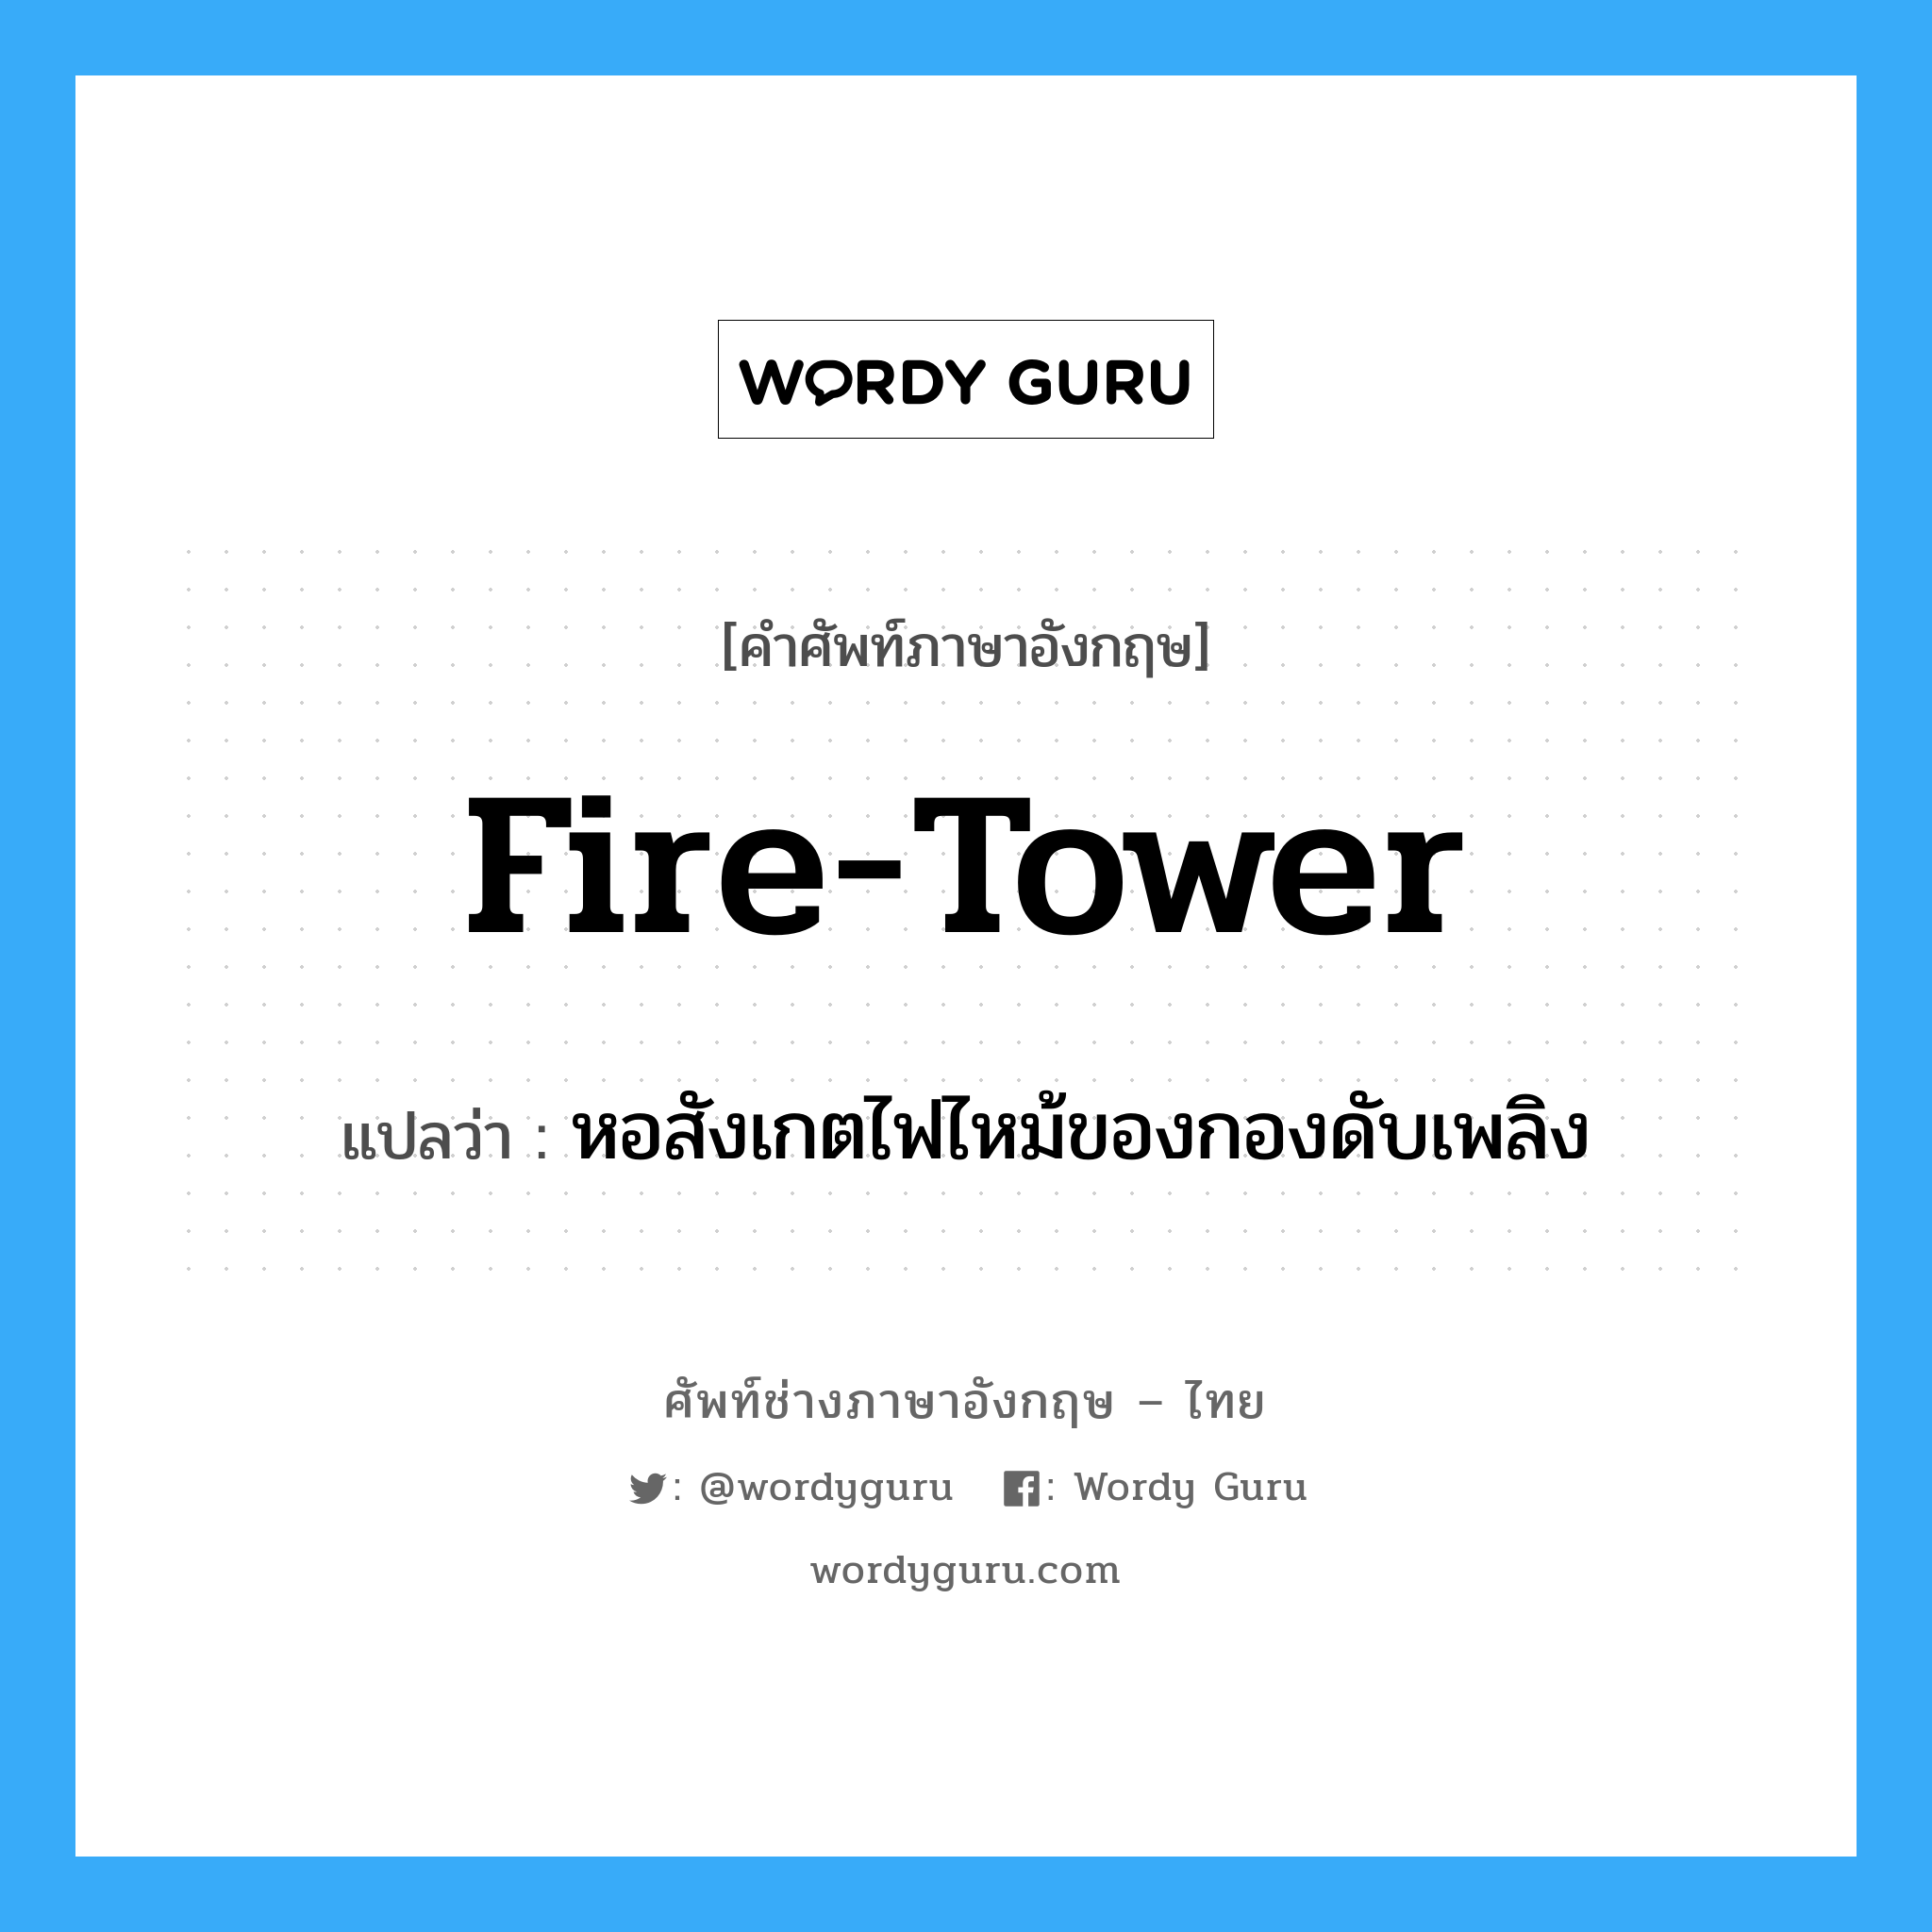 fire-tower แปลว่า?, คำศัพท์ช่างภาษาอังกฤษ - ไทย fire-tower คำศัพท์ภาษาอังกฤษ fire-tower แปลว่า หอสังเกตไฟไหม้ของกองดับเพลิง